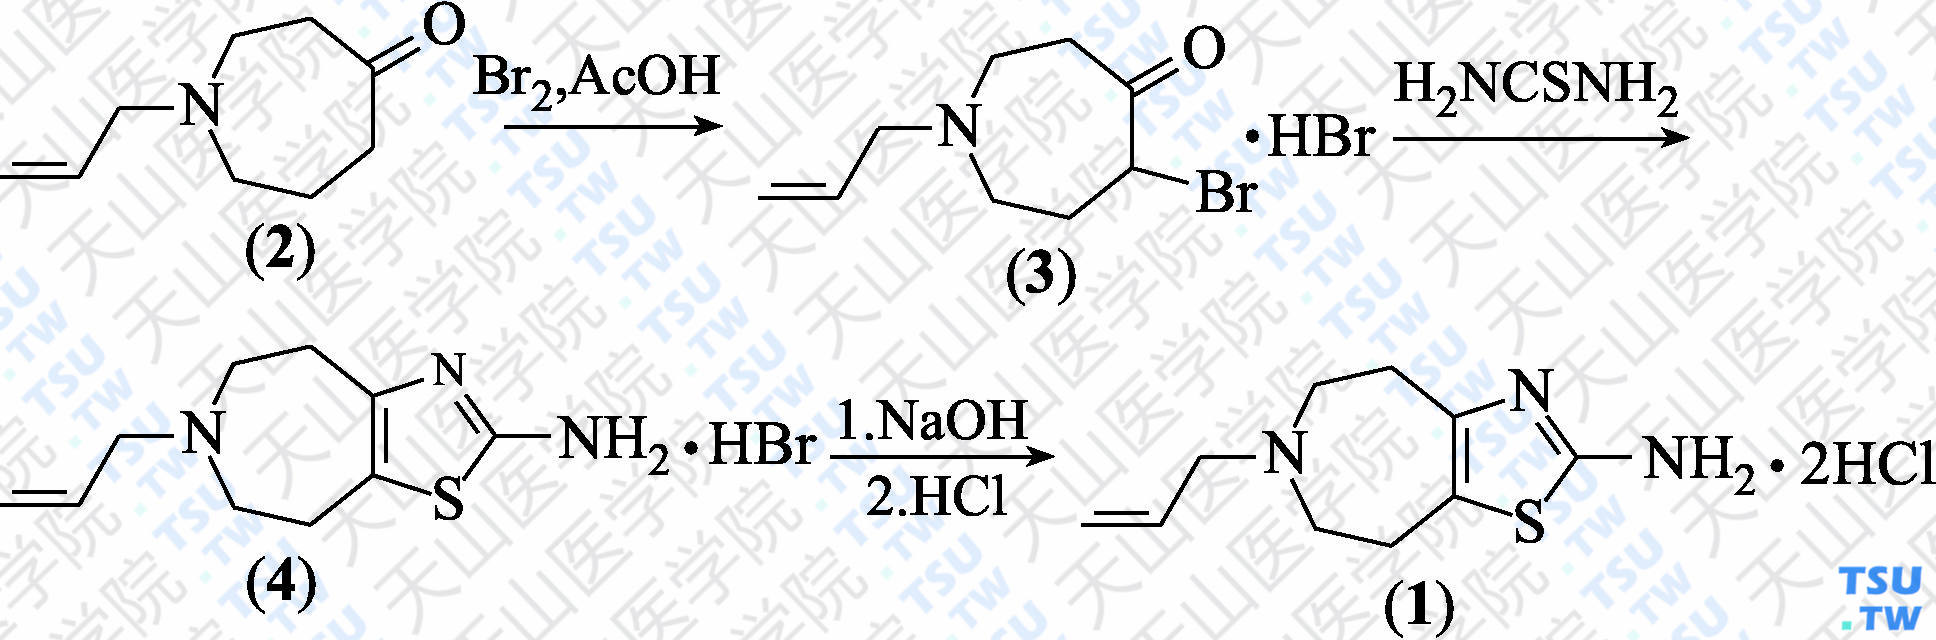 盐酸他利帕索（分子式：C<sub>10</sub>H<sub>15</sub>N<sub>3</sub>S·2HCl）的合成方法路线及其结构式